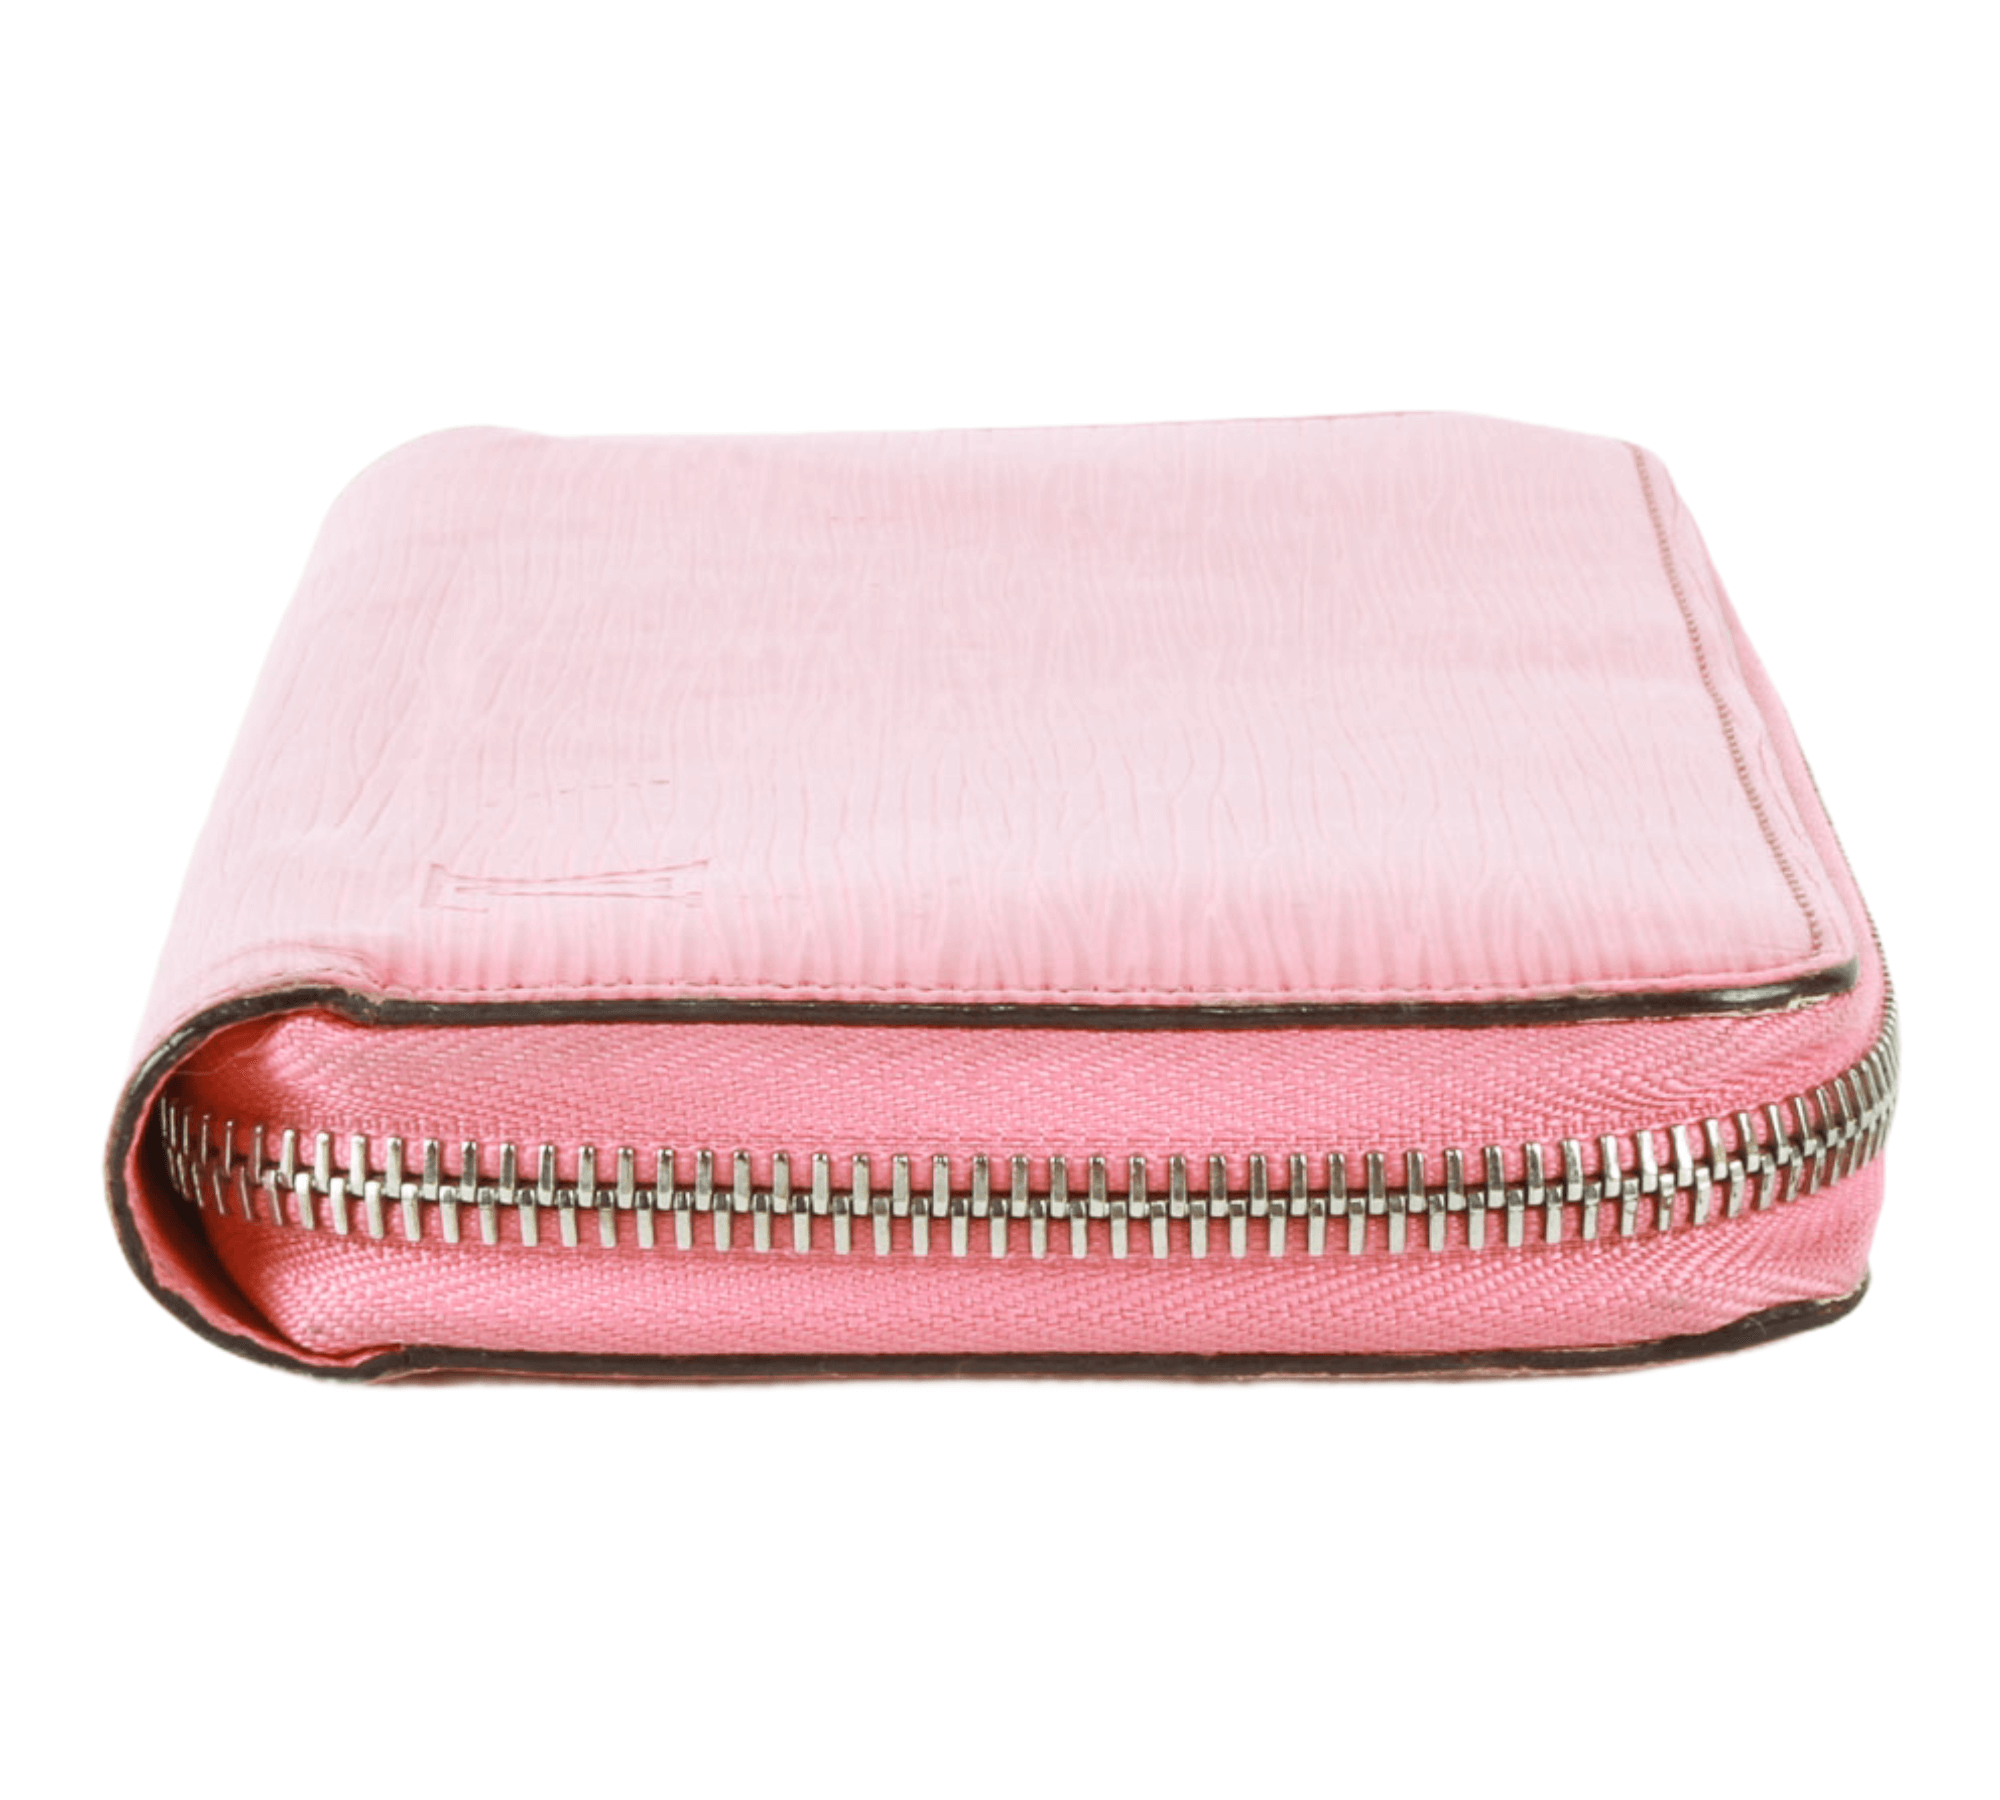 louis vuitton wallet pink zipper